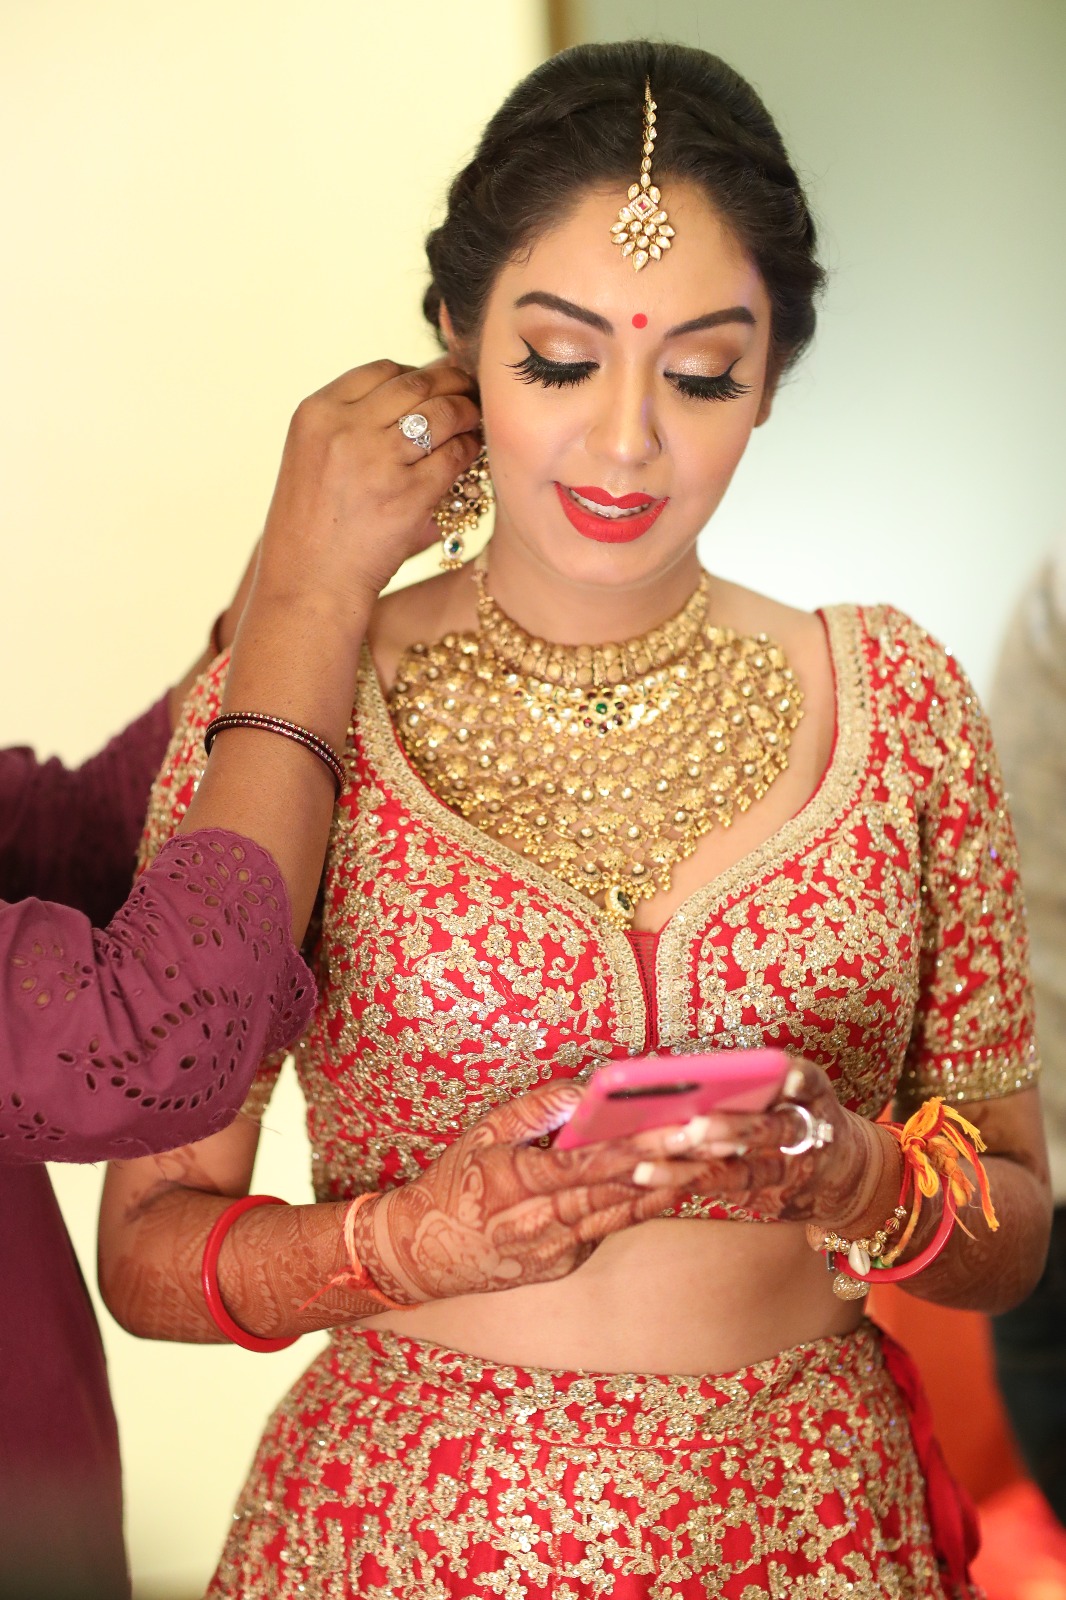 Bridal Makeup, India Bride, Indian Bridal Makeup, Red Lehenga, Red Bridal Look, Red Bindi, Red Lipstick